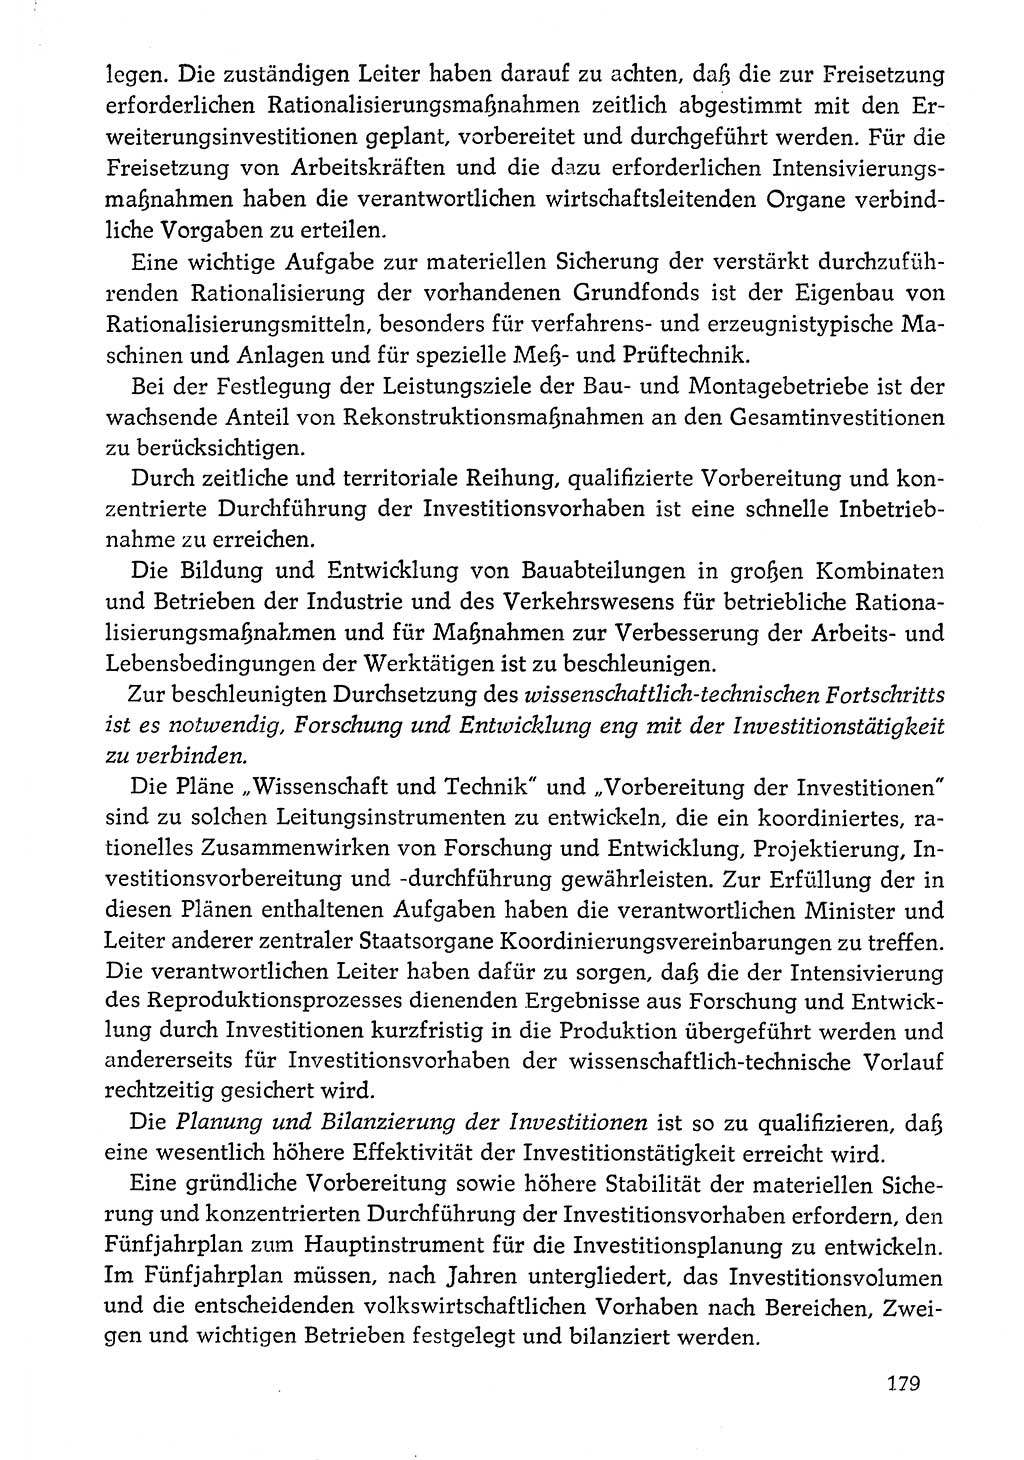 Dokumente der Sozialistischen Einheitspartei Deutschlands (SED) [Deutsche Demokratische Republik (DDR)] 1976-1977, Seite 179 (Dok. SED DDR 1976-1977, S. 179)